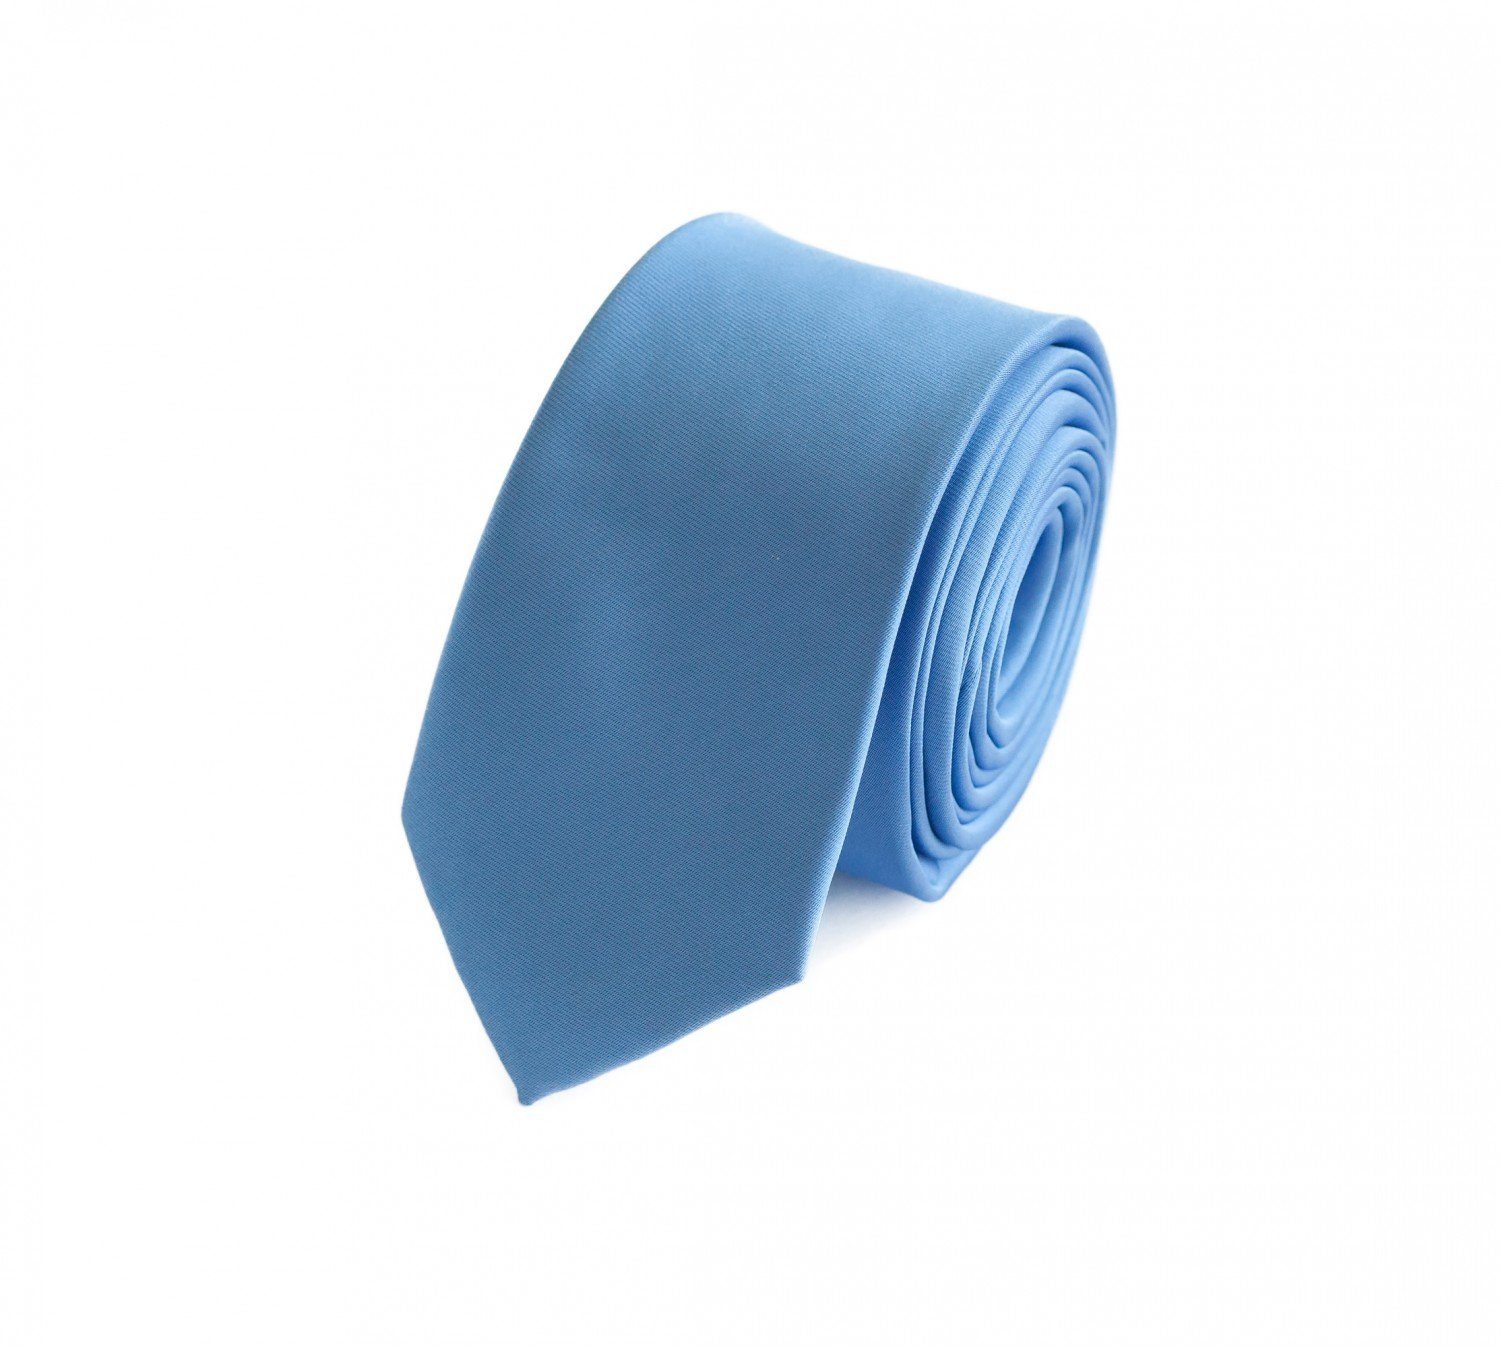 Fabio Farini Krawatte Herren Krawatten Blautöne - klassische Männer Schlipse in 6cm (ohne Box, Unifarben) Schmal (6cm), Himmel Blau Einfarbig